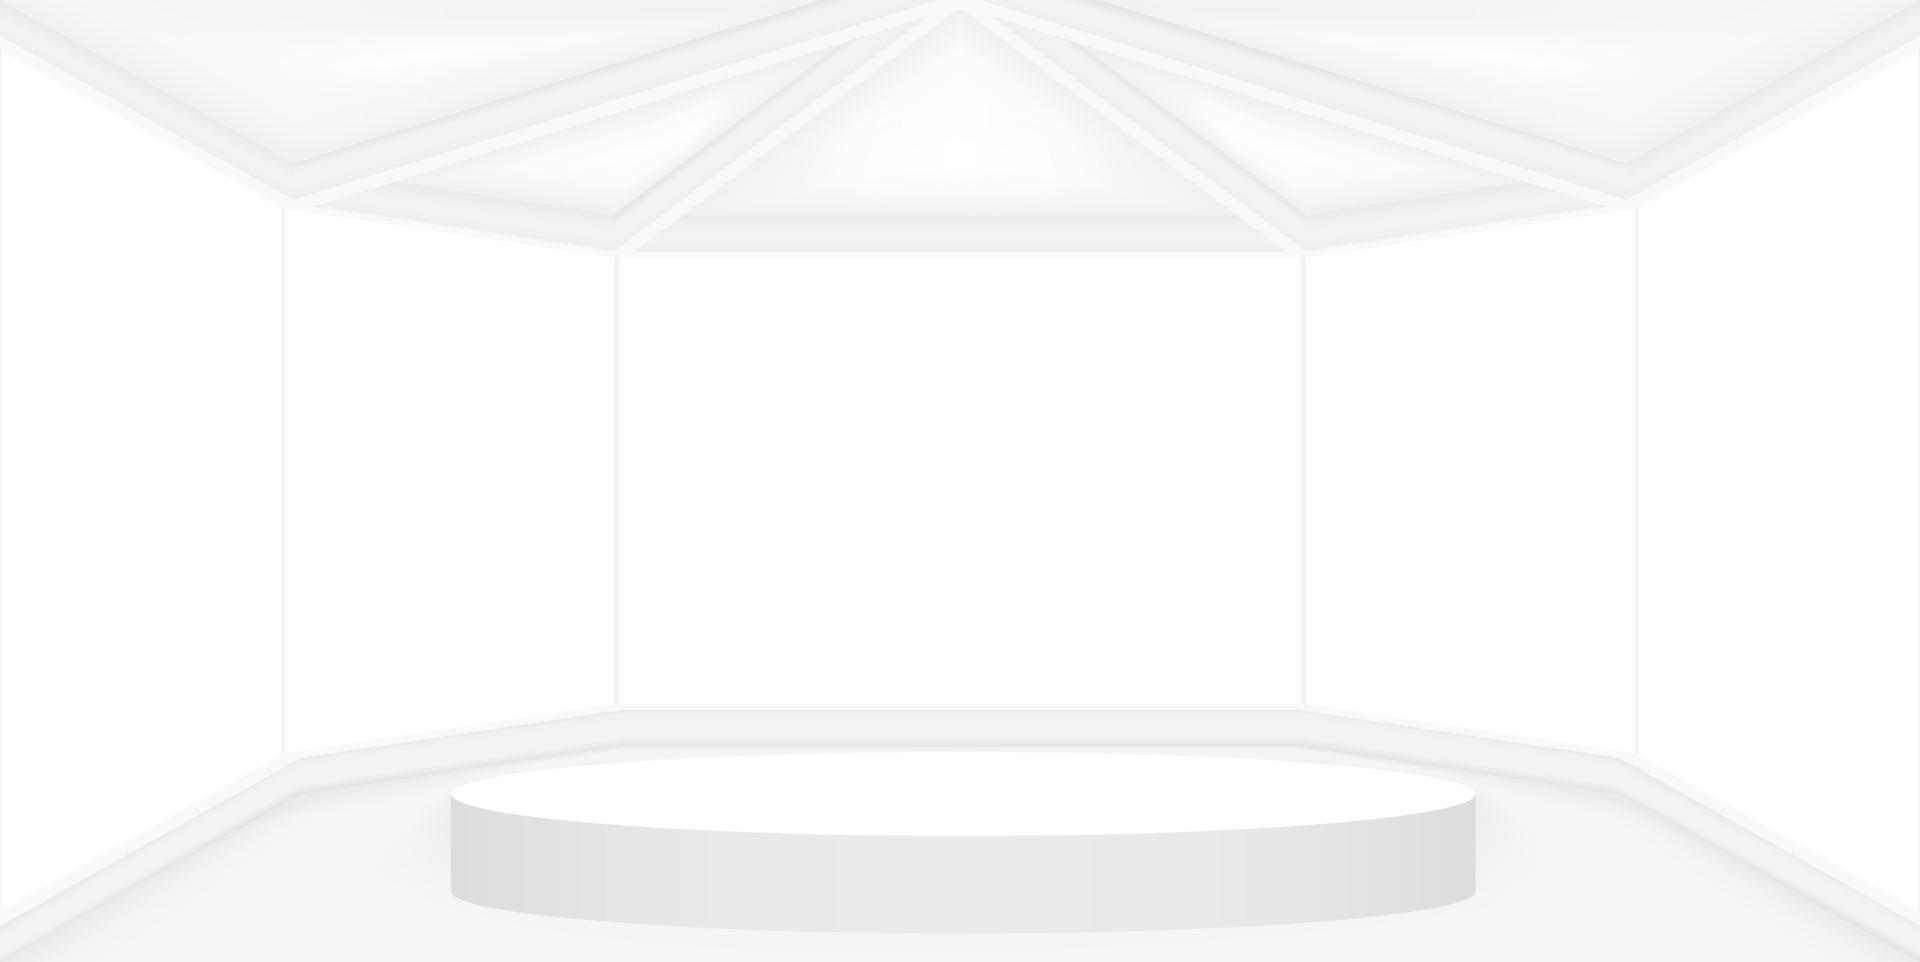 leeg wit kamer met wit ronde stadium of podium voor Scherm, presentatie, model, stadium voetstuk of montage Product. abstract 3d interieur sjabloon vector illustratie voor achtergrond.